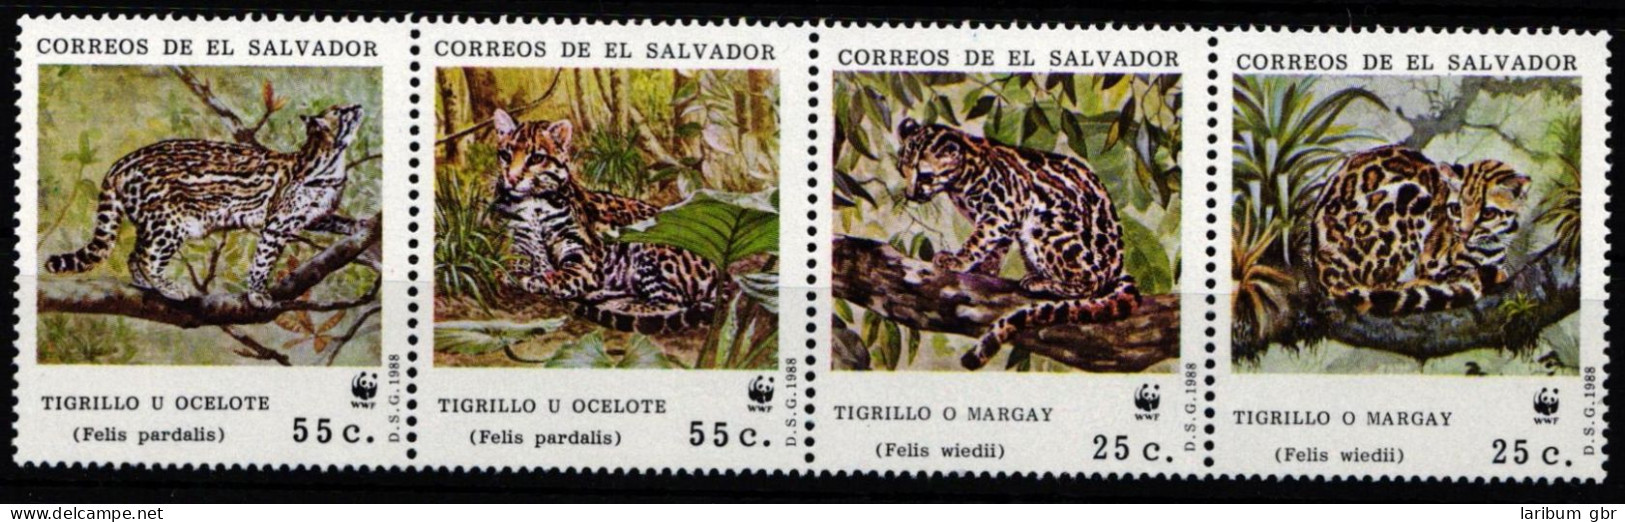 El Salvador 1734-1737 Postfrisch Raubkatze, Ozelot #JW489 - Salvador